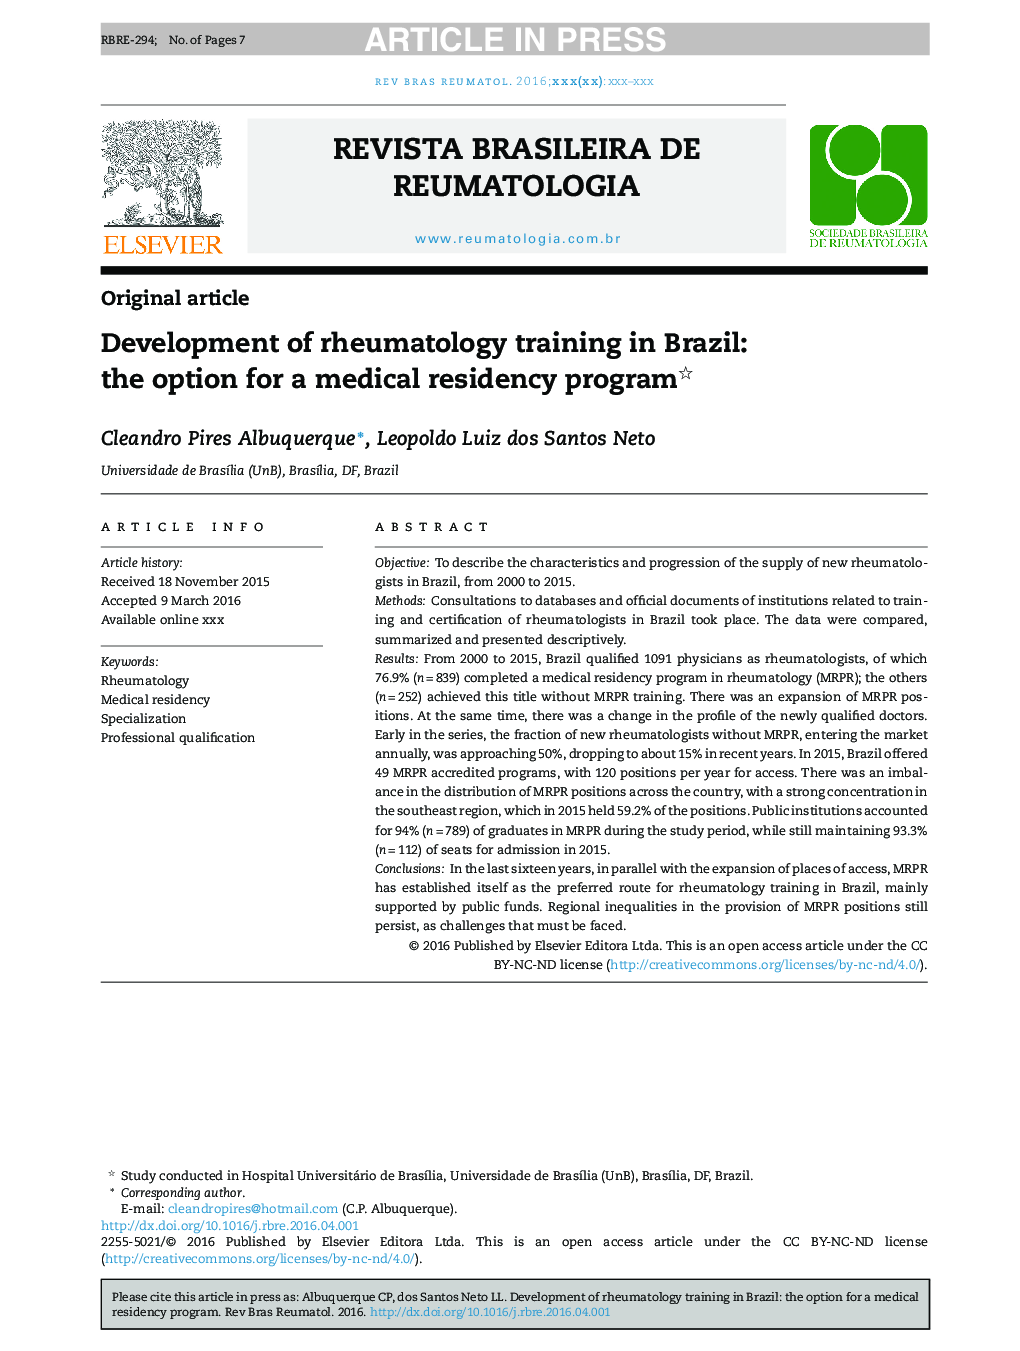 Development of rheumatology training in Brazil: the option for a medical residency program